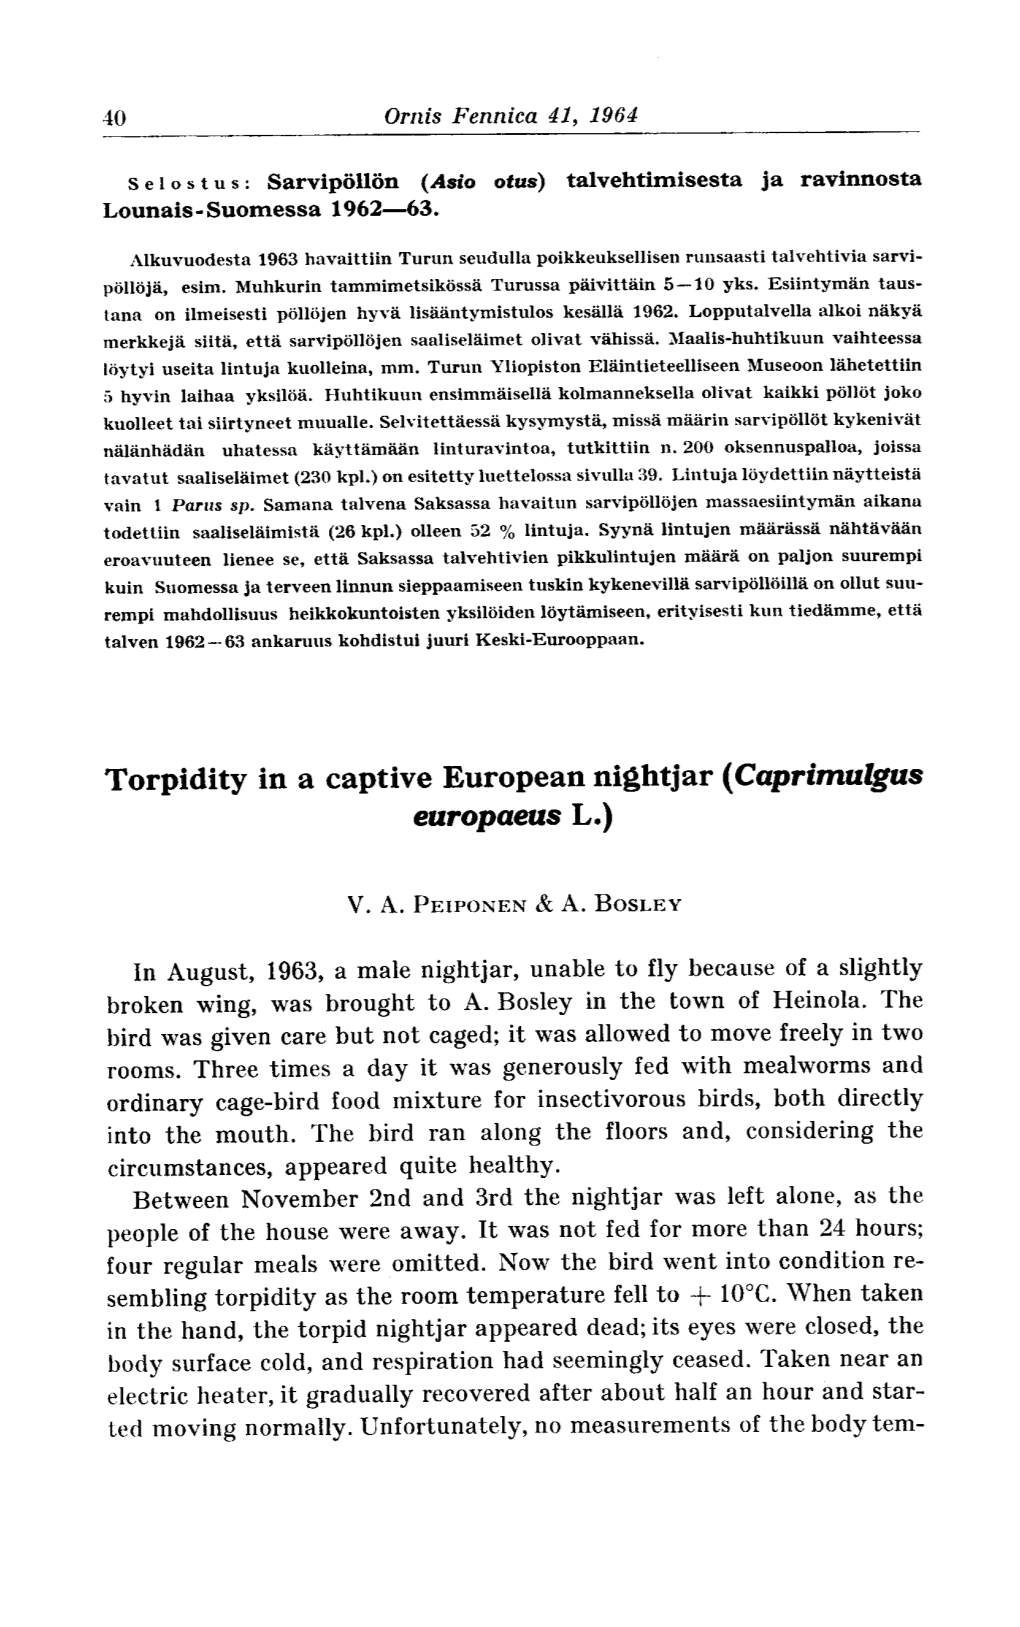 Torpidity in a Captive European Nightjar (Caprimulgus Europaeus L.)